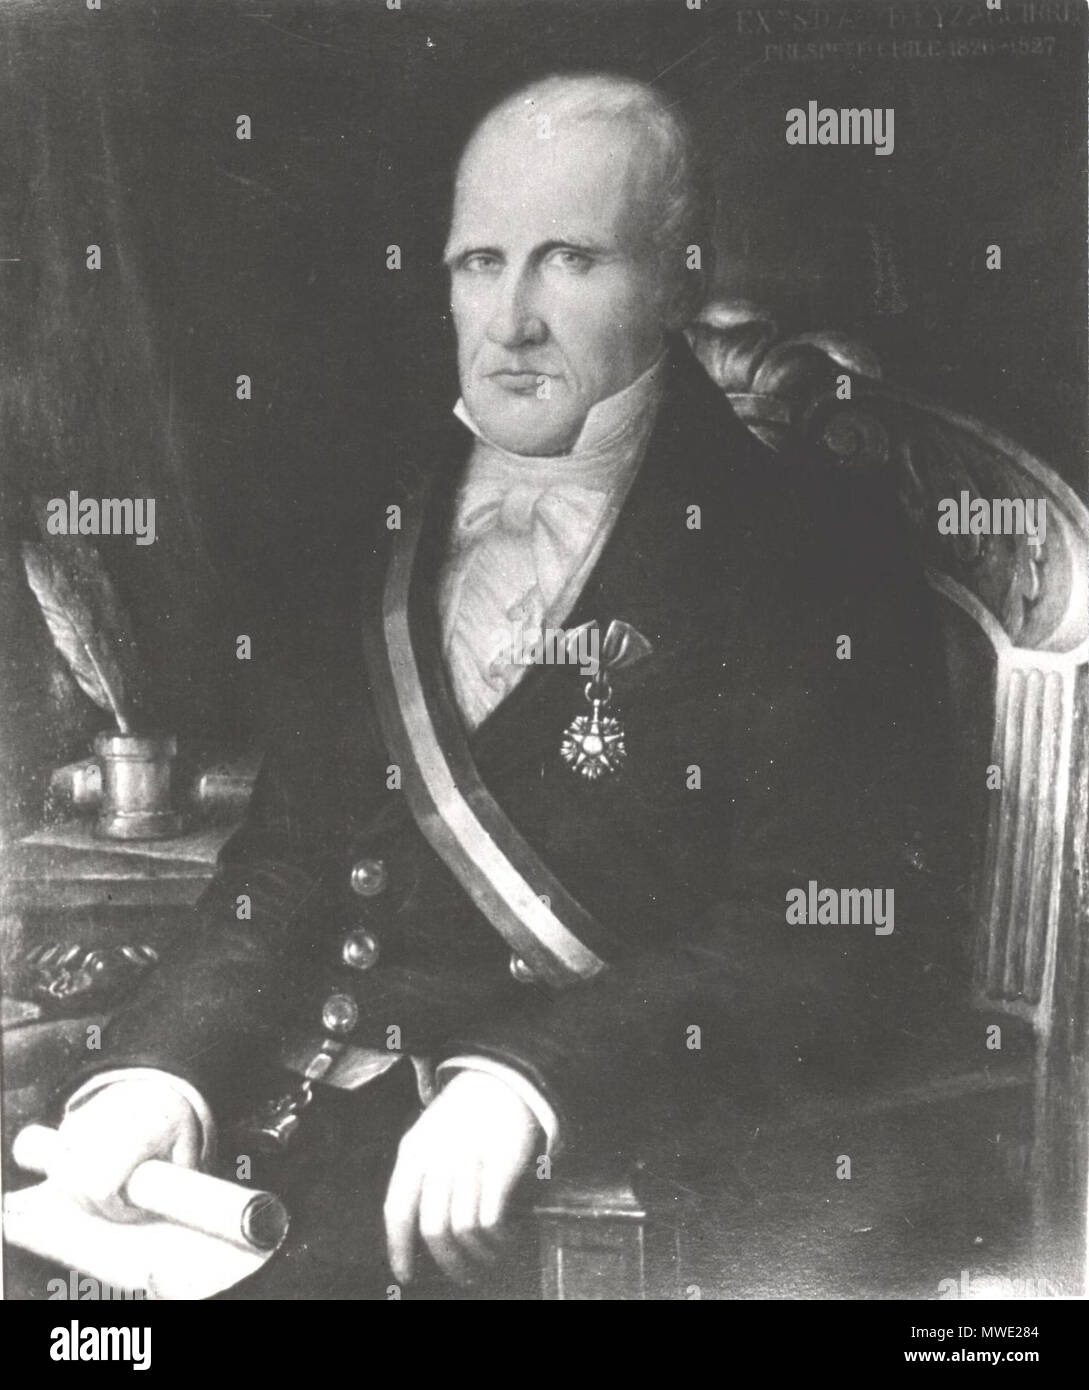 . Español: Agustín Manuel de Eyzaguirre Arechavala, (1768-1837) presidente de la República de Chile 1811-1825. Xix secolo. Sconosciuto 200 Eyzaguirre 2 Foto Stock